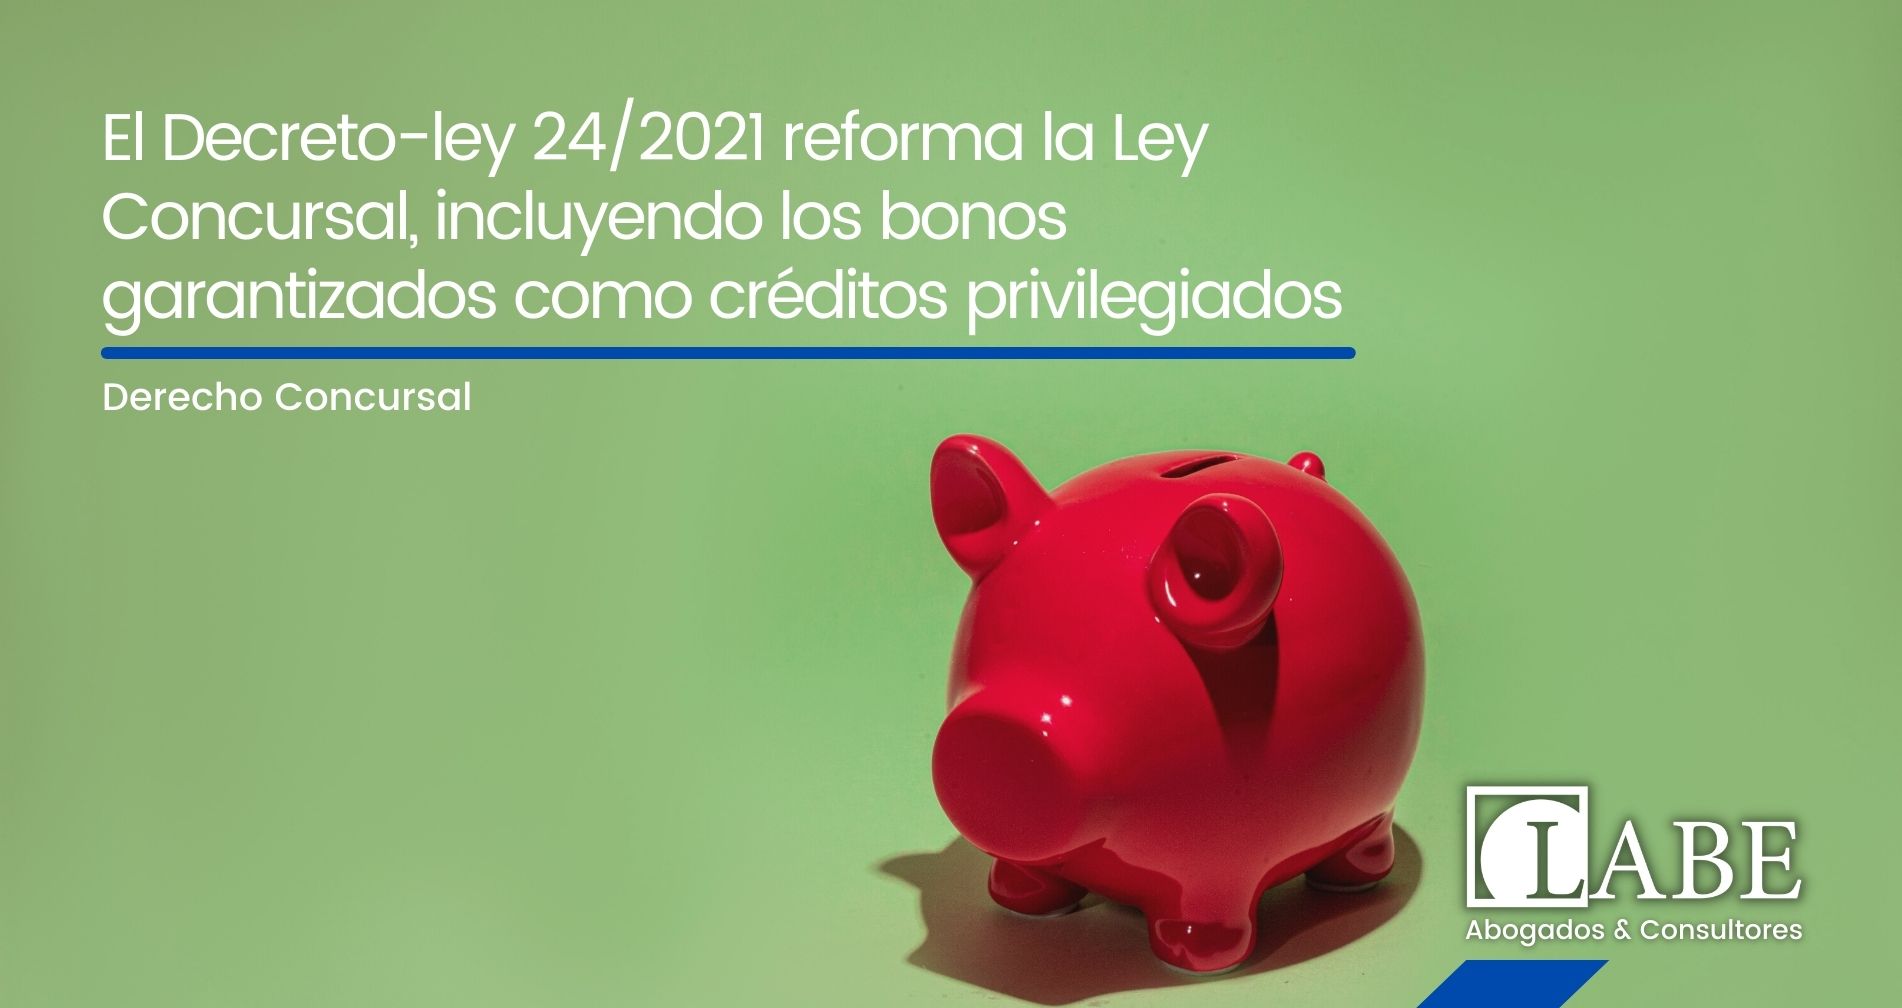 El Decreto-ley 24/2021 reforma la Ley Concursal, incluyendo los bonos garantizados como créditos privilegiados